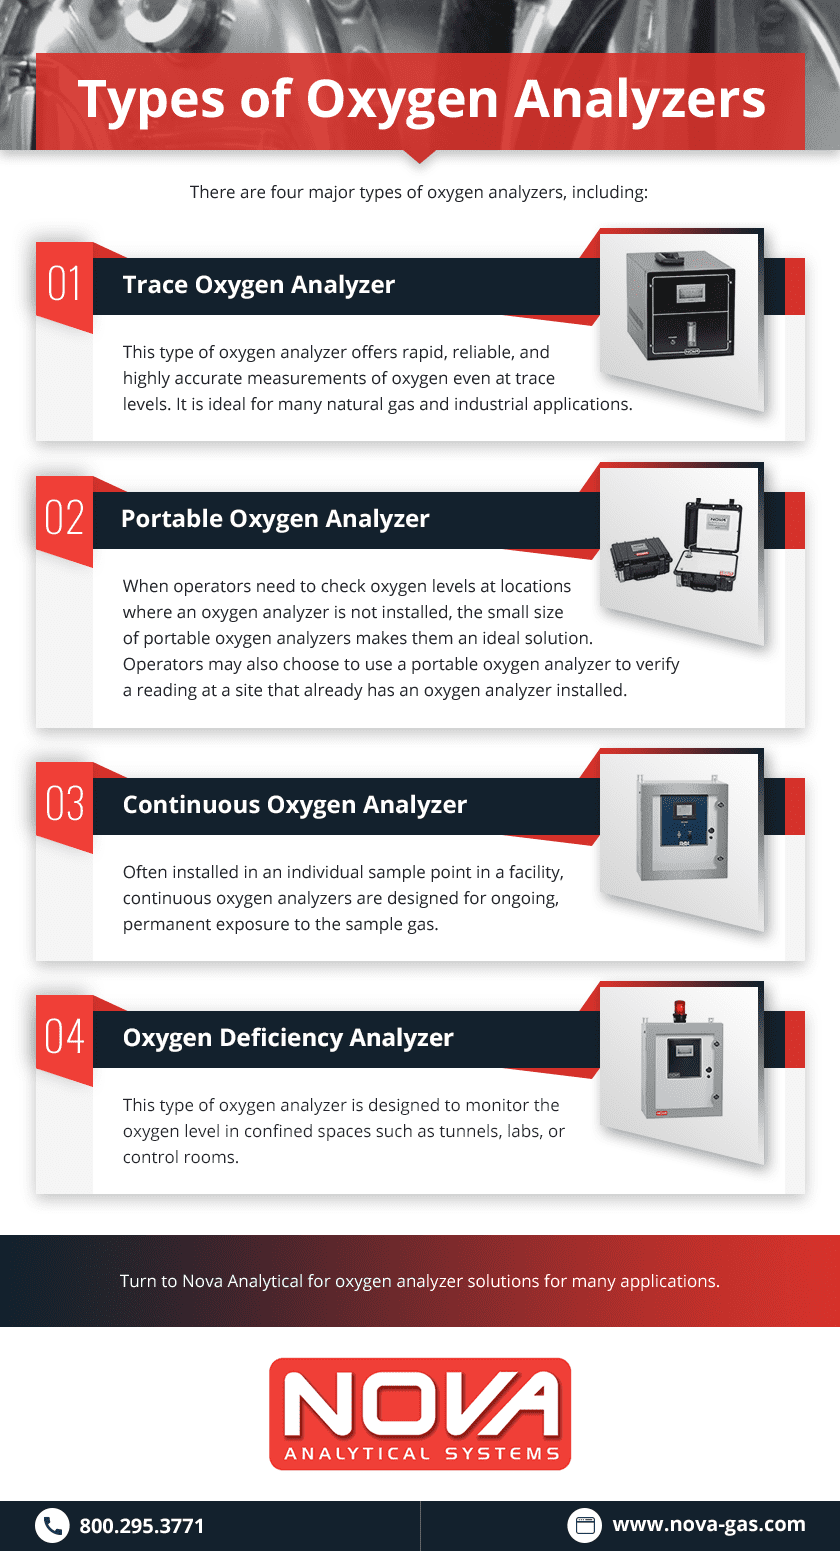 Types of Oxygen Analyzers